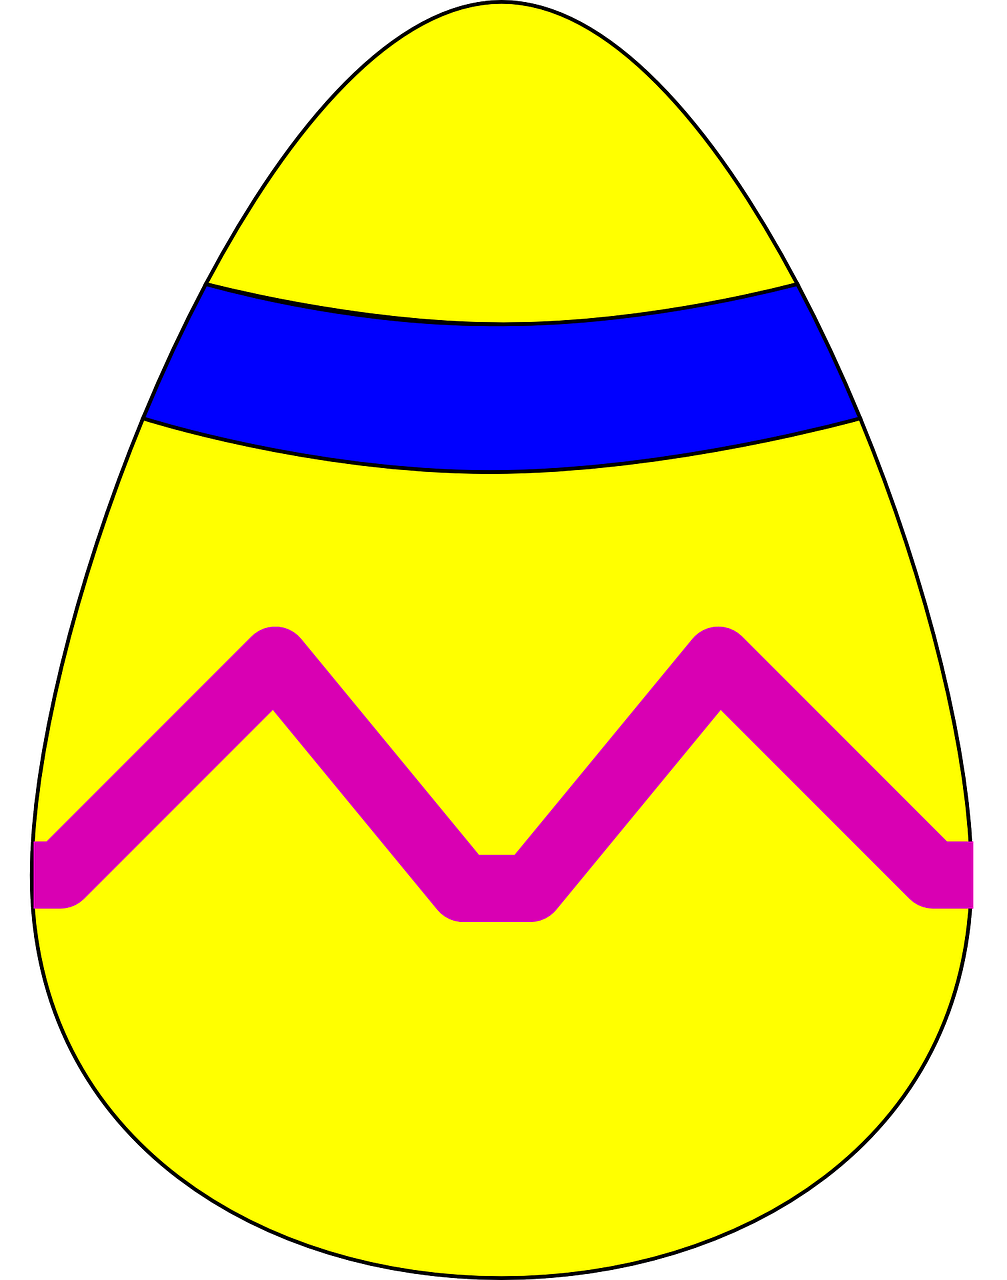 Easter Egg Decoration Design